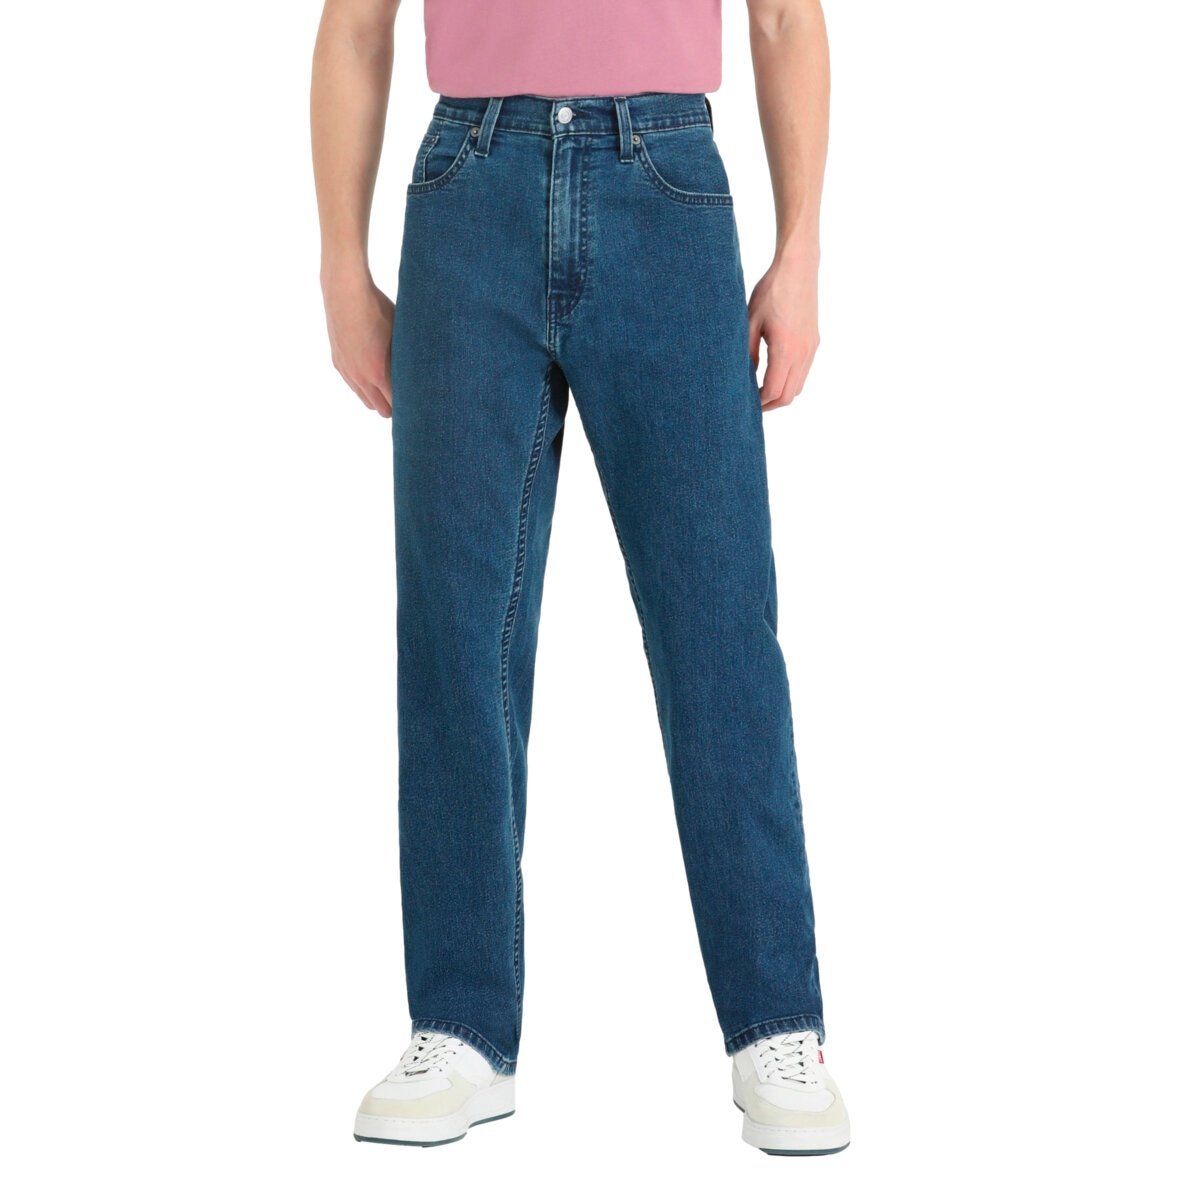 Levis 505 Jeans para Caballero Varias Tallas y Colores